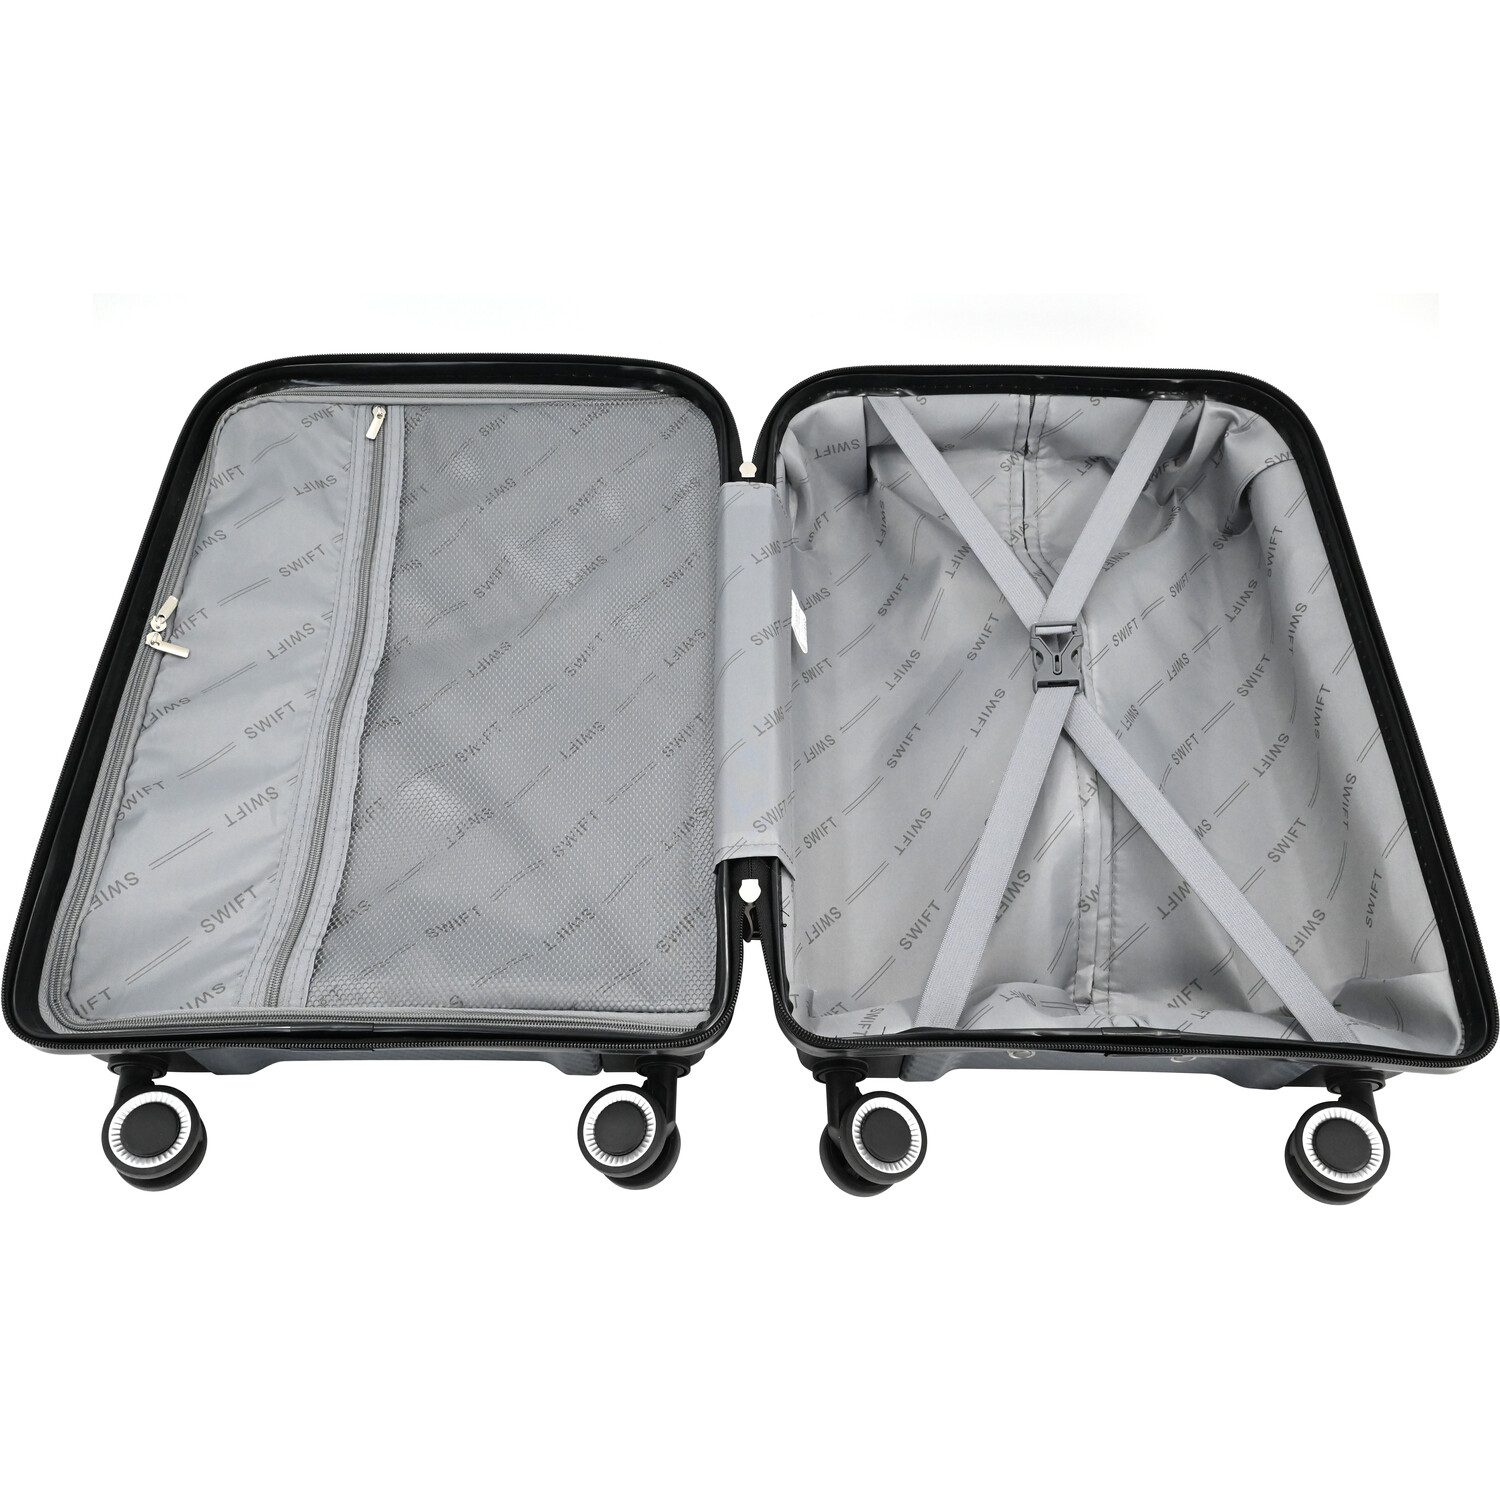 Swift Discovery Luggage Case - Grey / Large Case Image 5